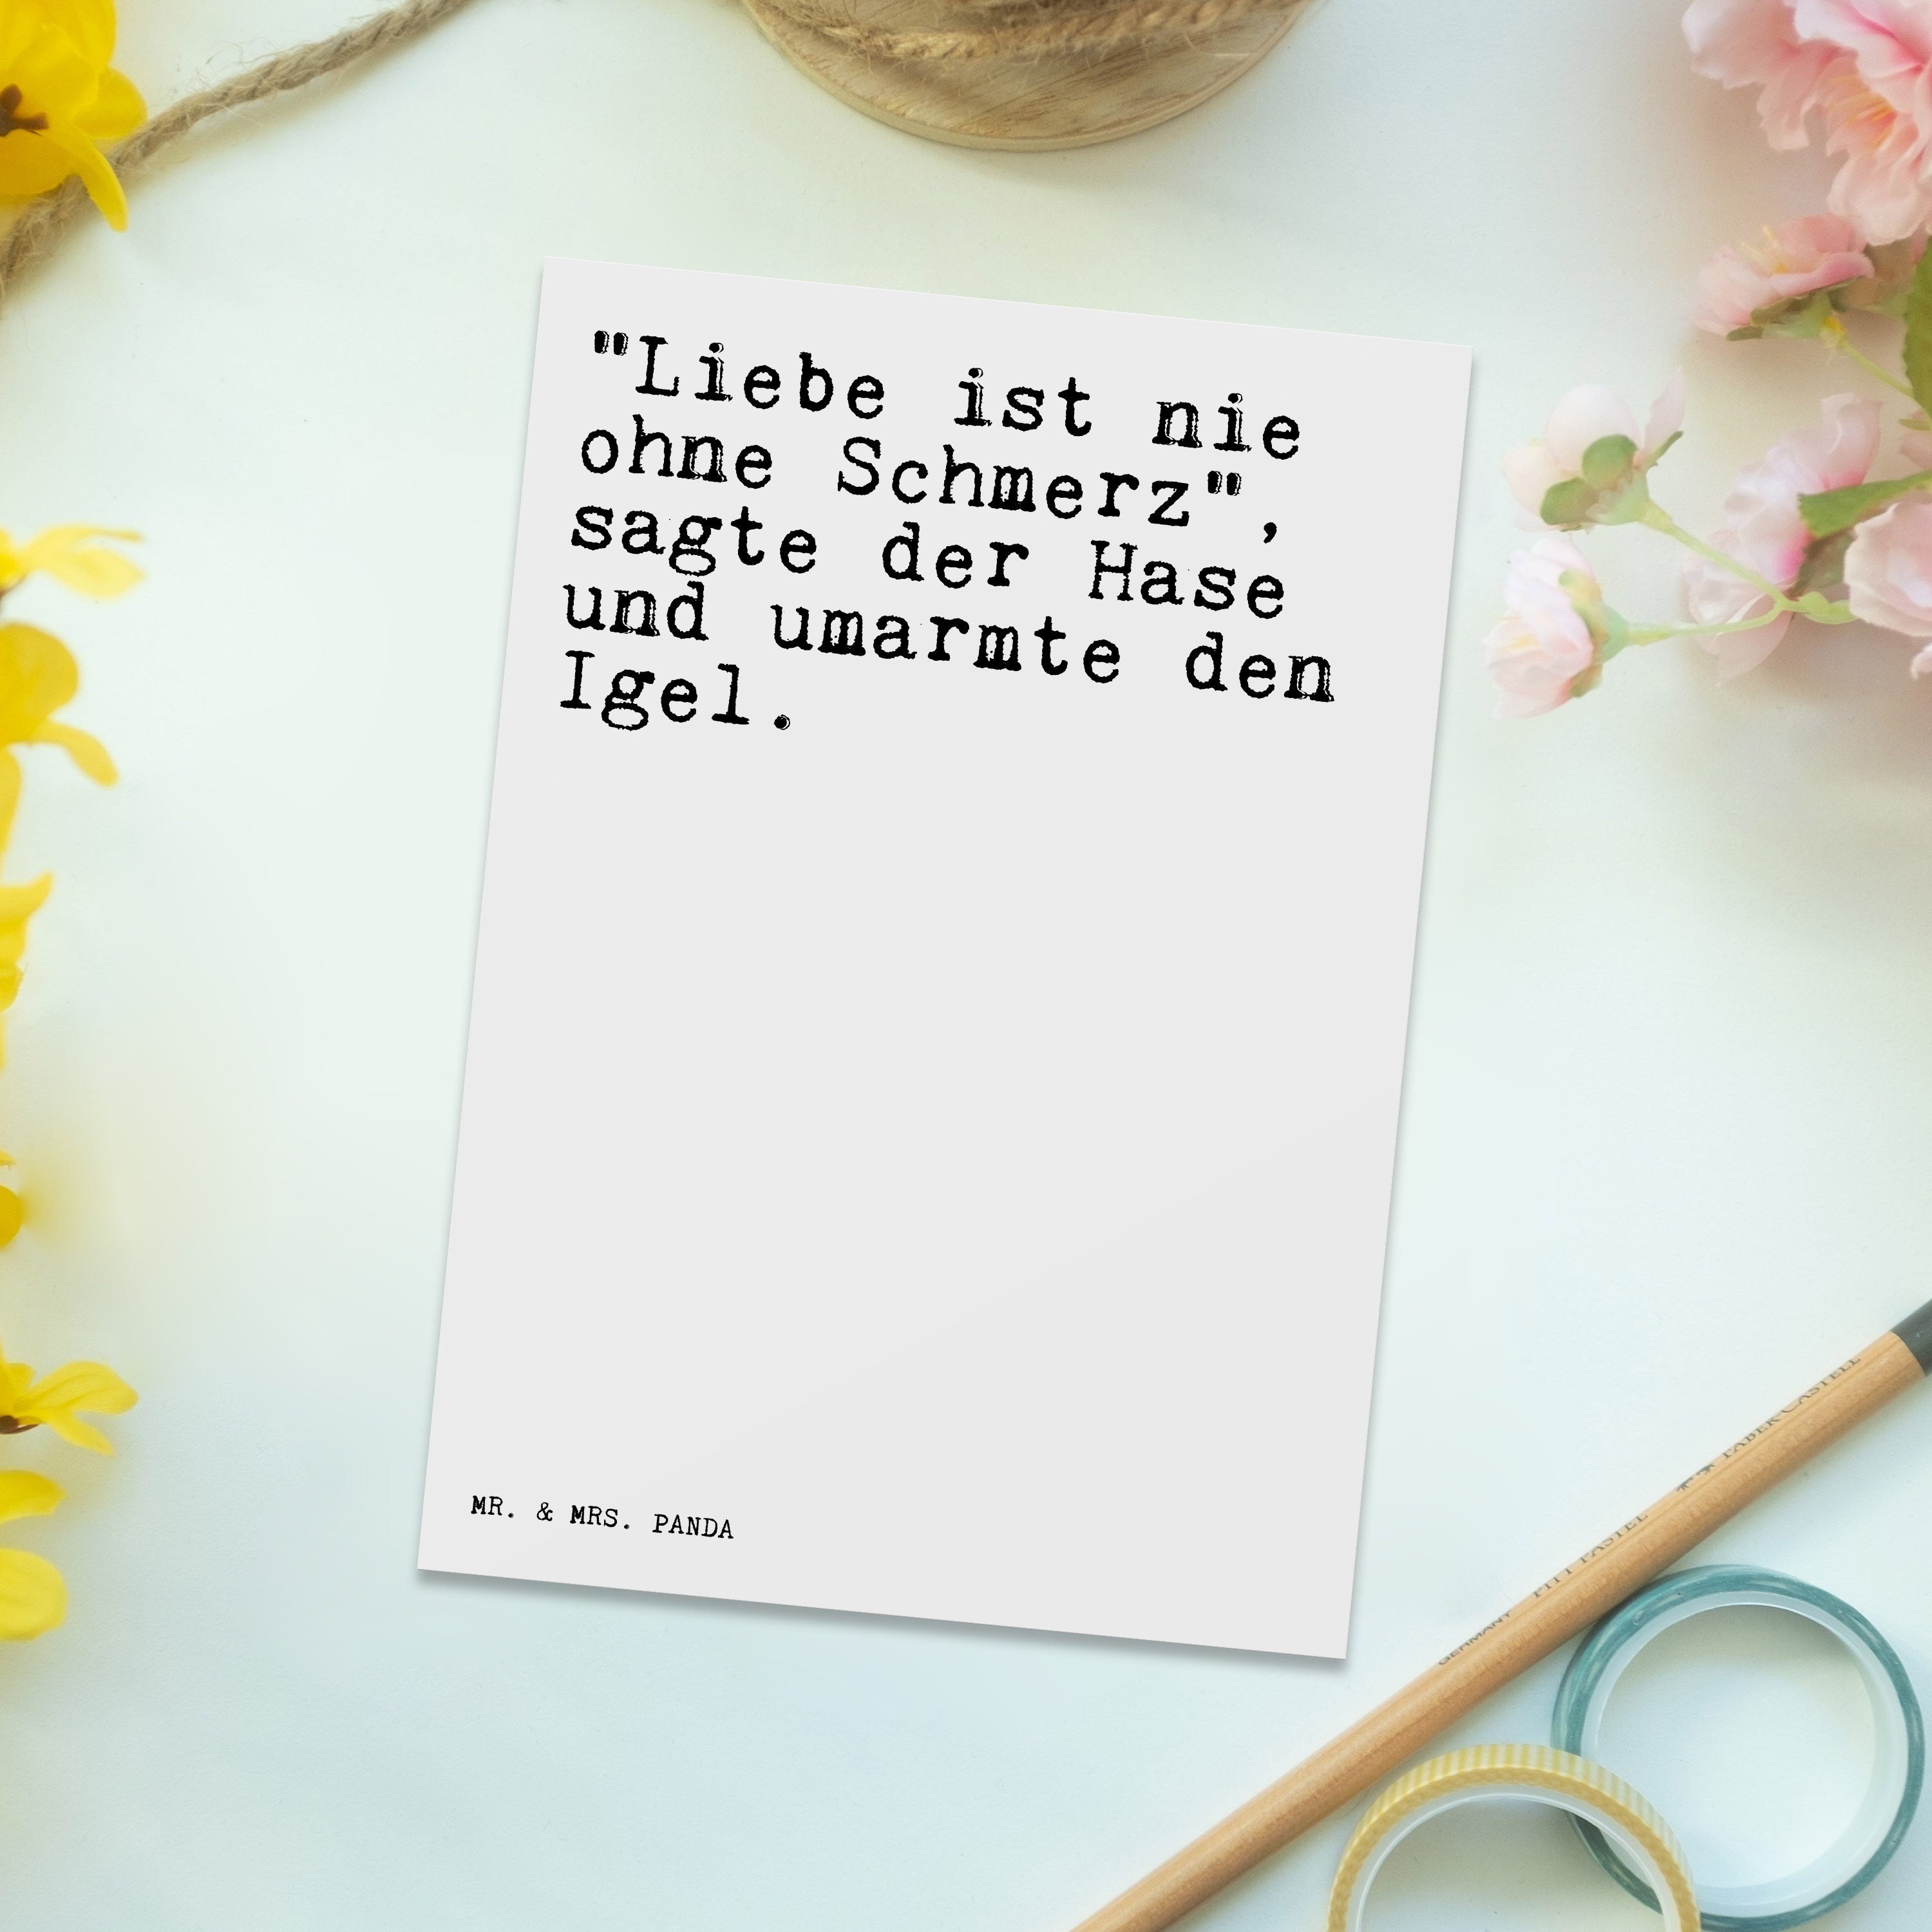 Mr. & Geschenk, nie Weiß - "Liebe Herzschm Panda Mrs. Liebeskummer - Postkarte ist ohne... Liebe